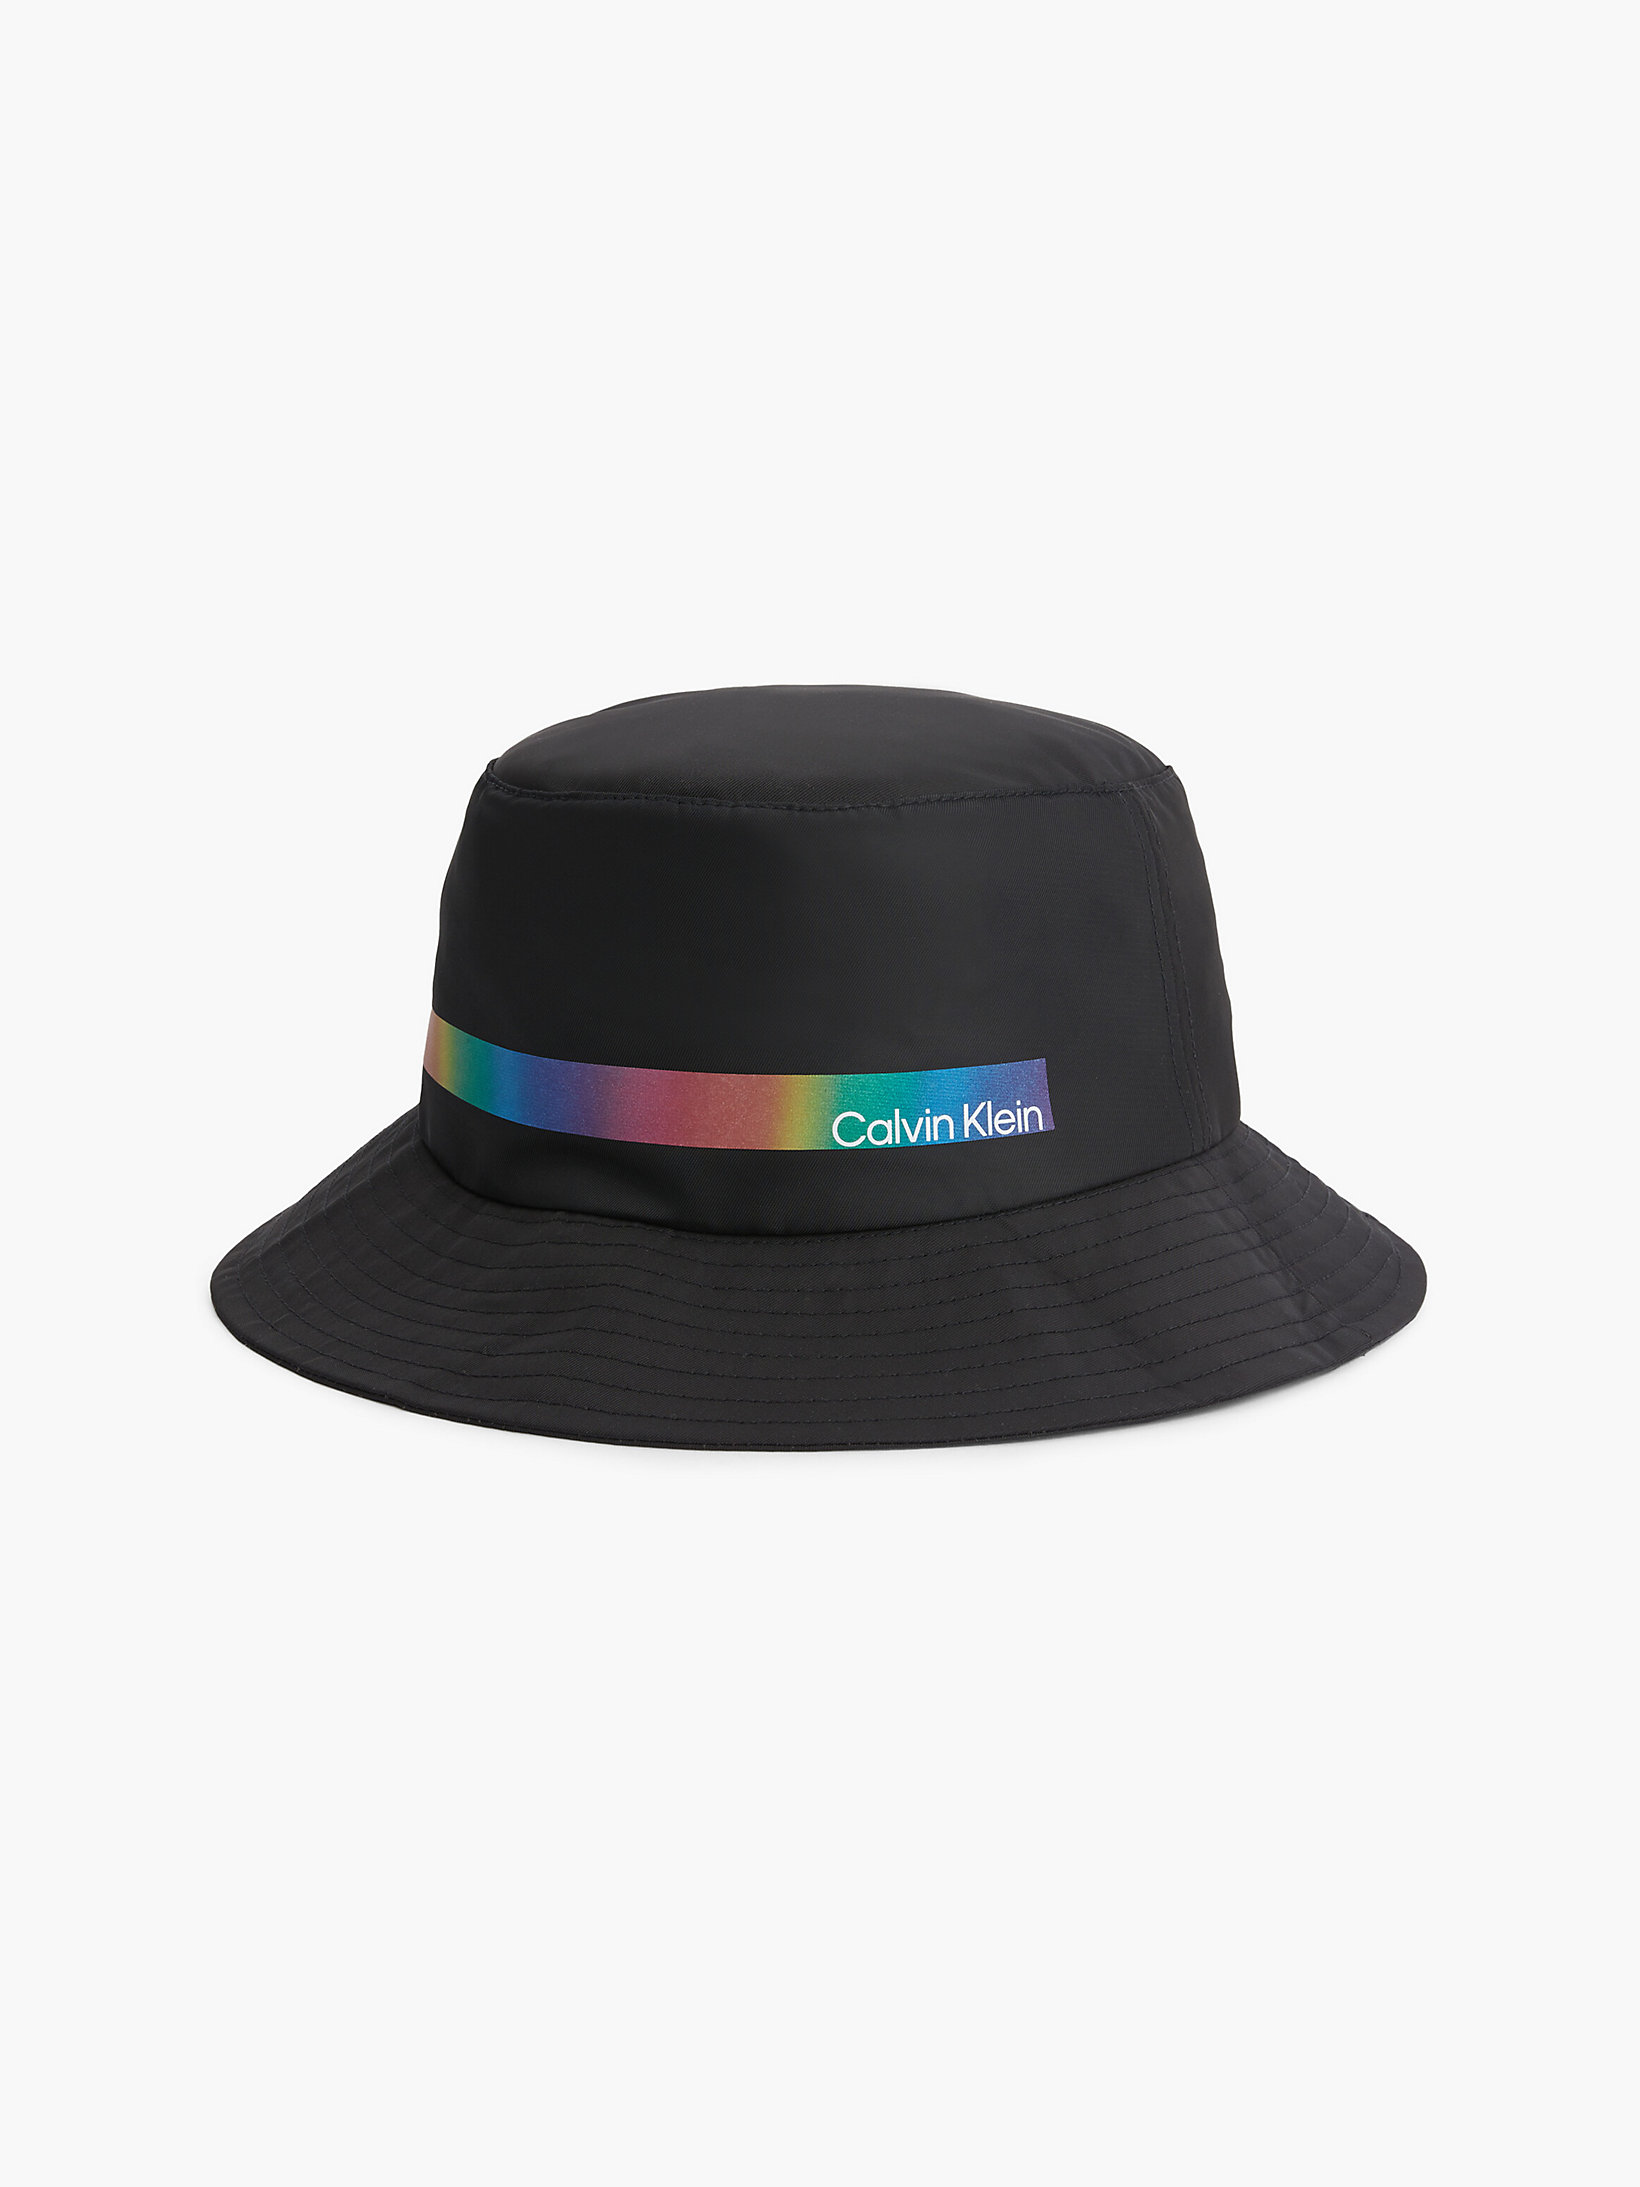 CK Black > Verstaubarer Bucket Hat - Pride > undefined Unisex - Calvin Klein